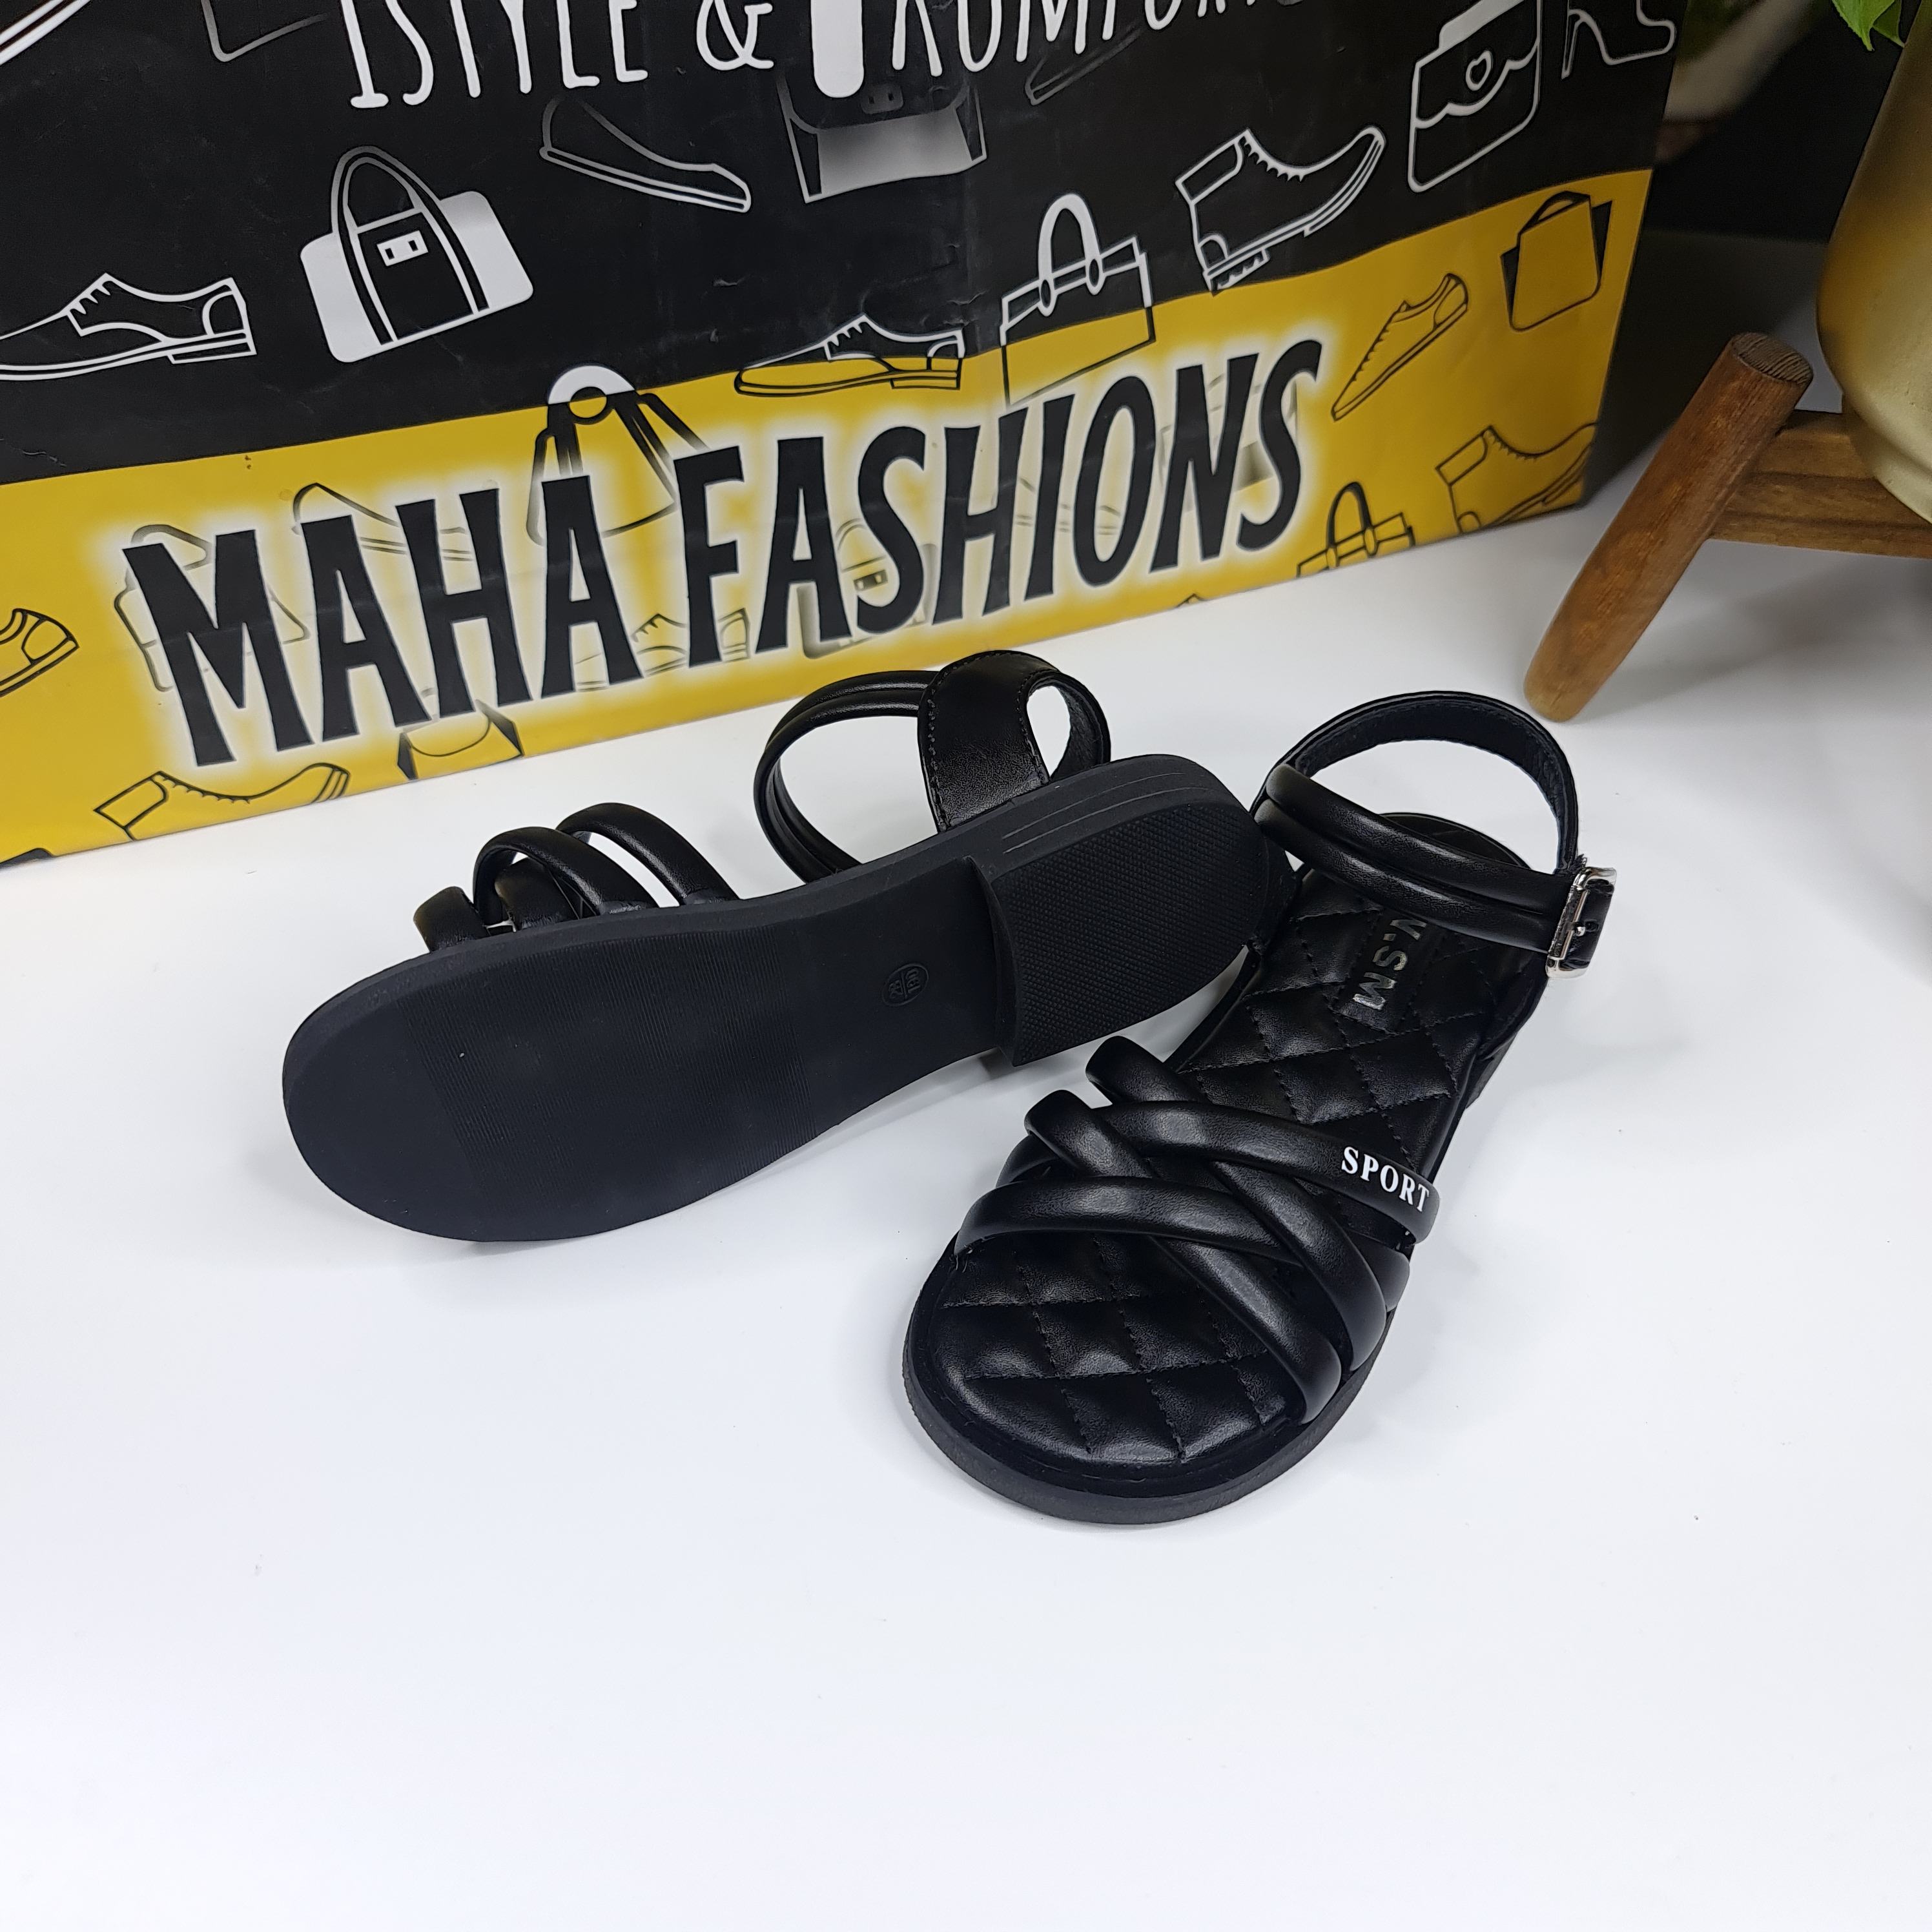 SMK-015 BLACK - Maha fashions -  